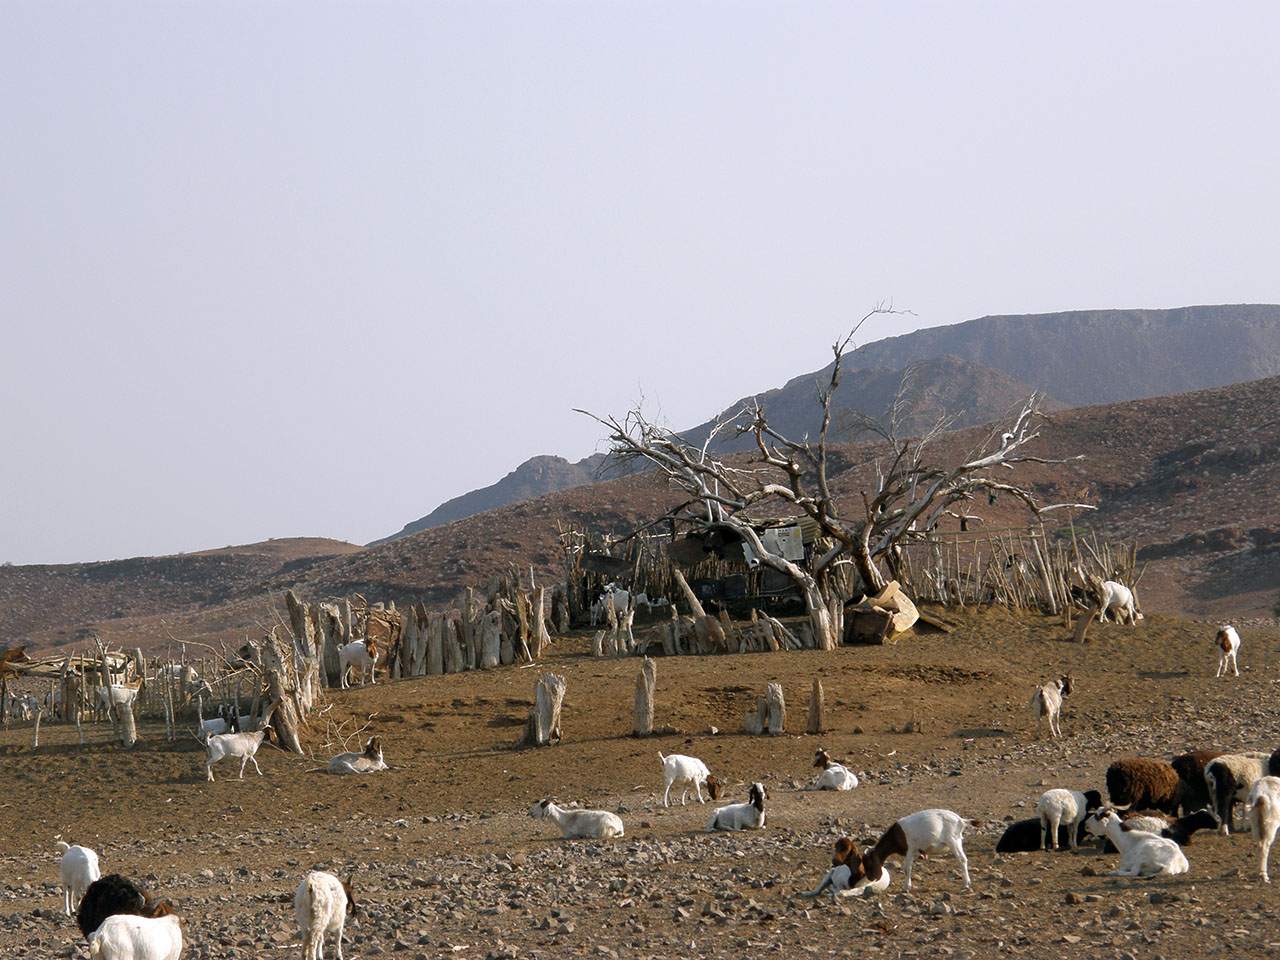 Livestock barn, Damaraland, Namibia